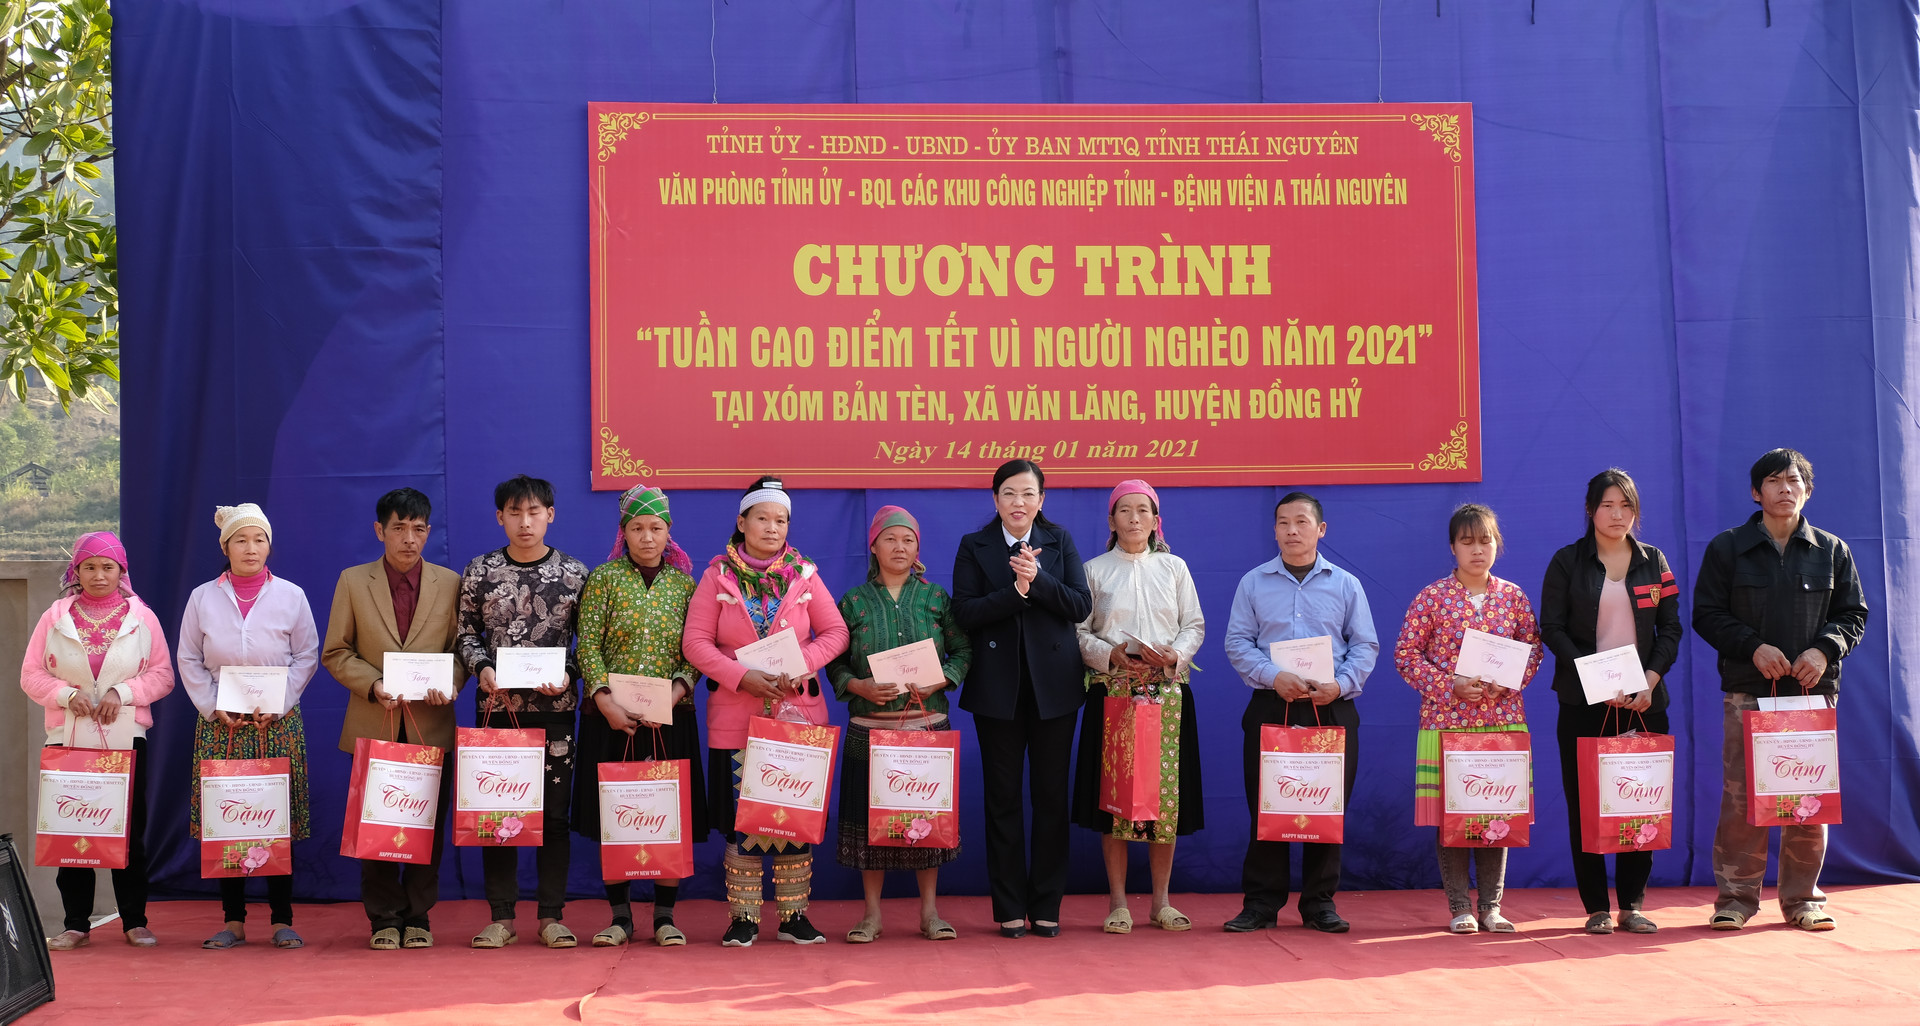 Đồng chí Nguyễn Thanh Hải, Bí thư Tỉnh ủy tặng quà người nghèo trong “Tuần cao điểm Tết vì người nghèo năm 2021”.